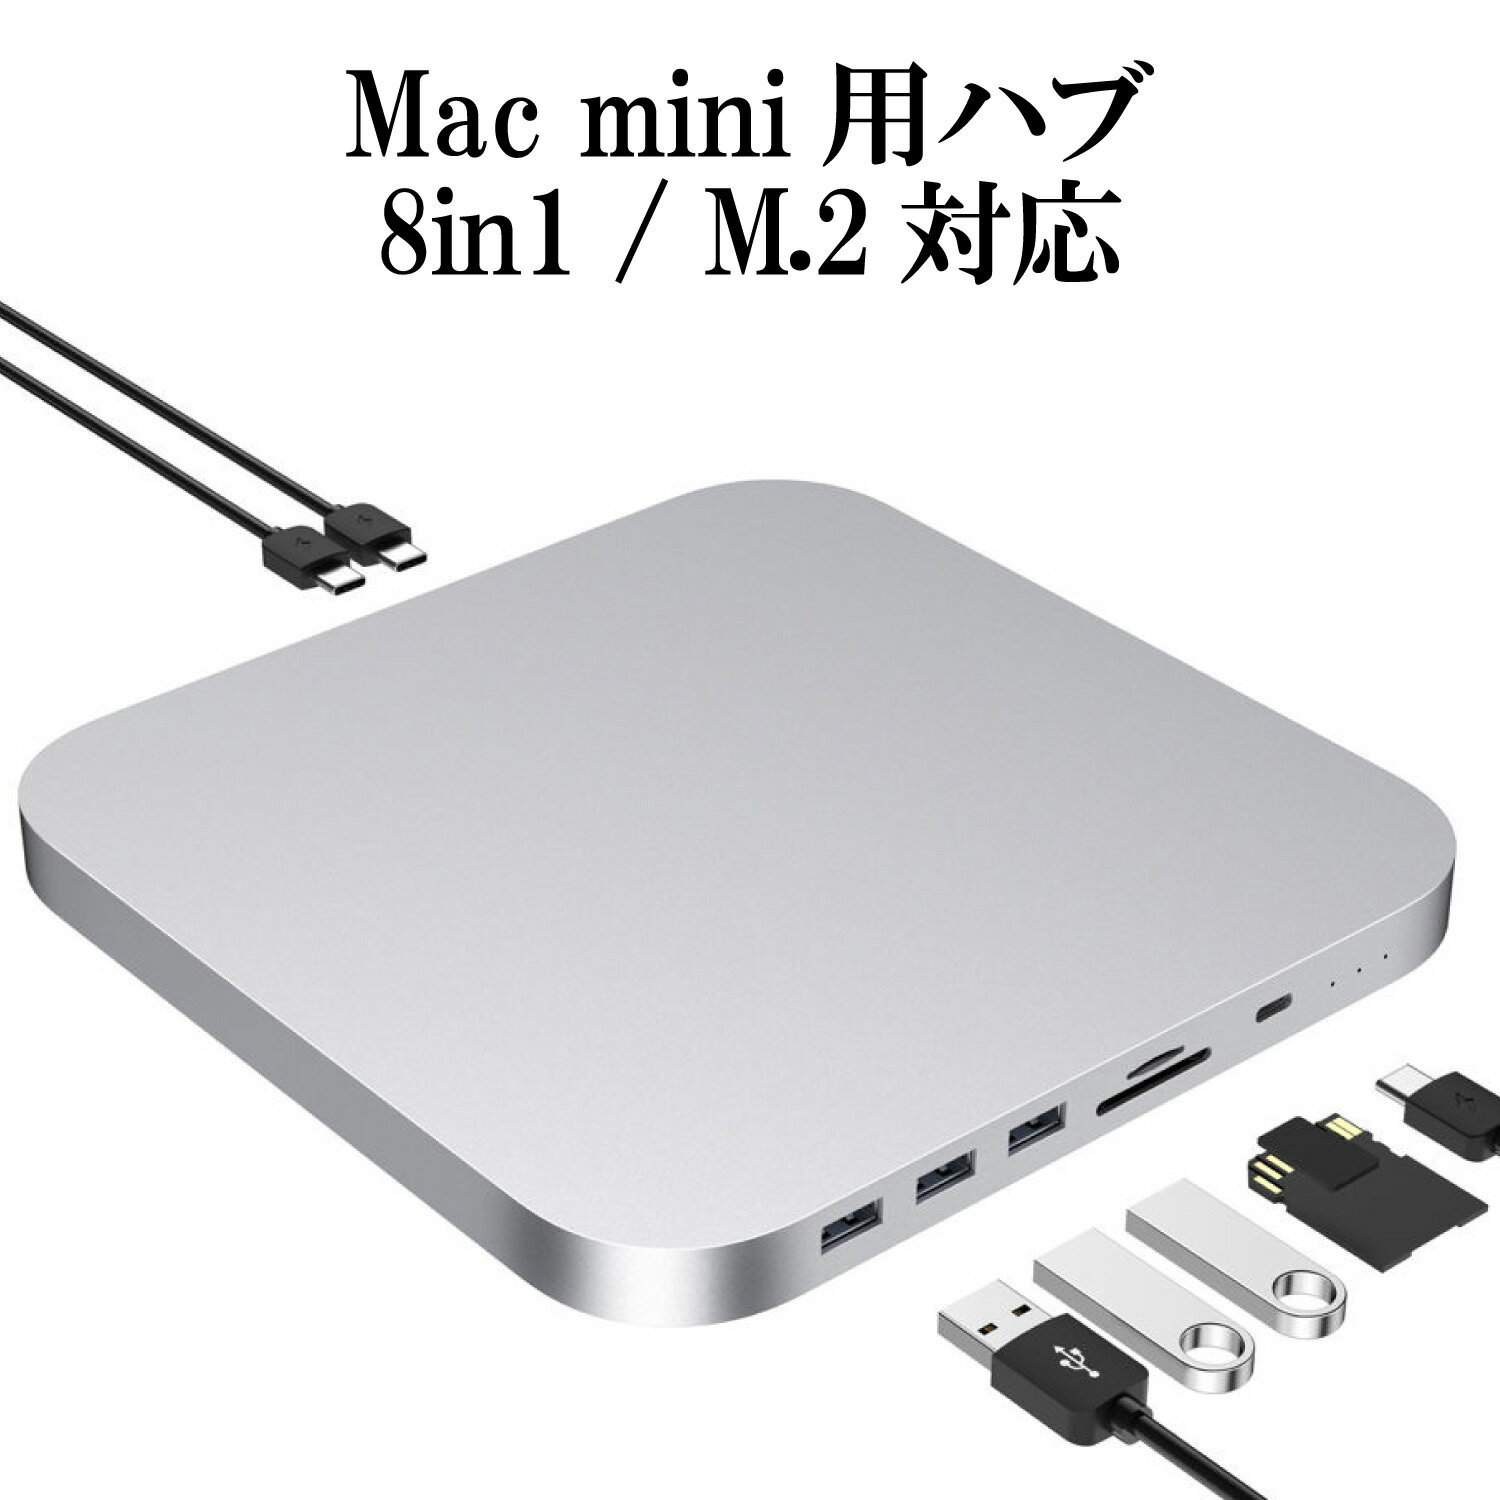 Mac mini ドッキングステーション 8in1 TypeC ハブ シルバー / M.2 + 2.5インチ SATA接続 SSD / HHD スロット 外付け SSD ケース / TypeA USB3.0 TypeC USB3.1 SD/TF microSD カードリーダー